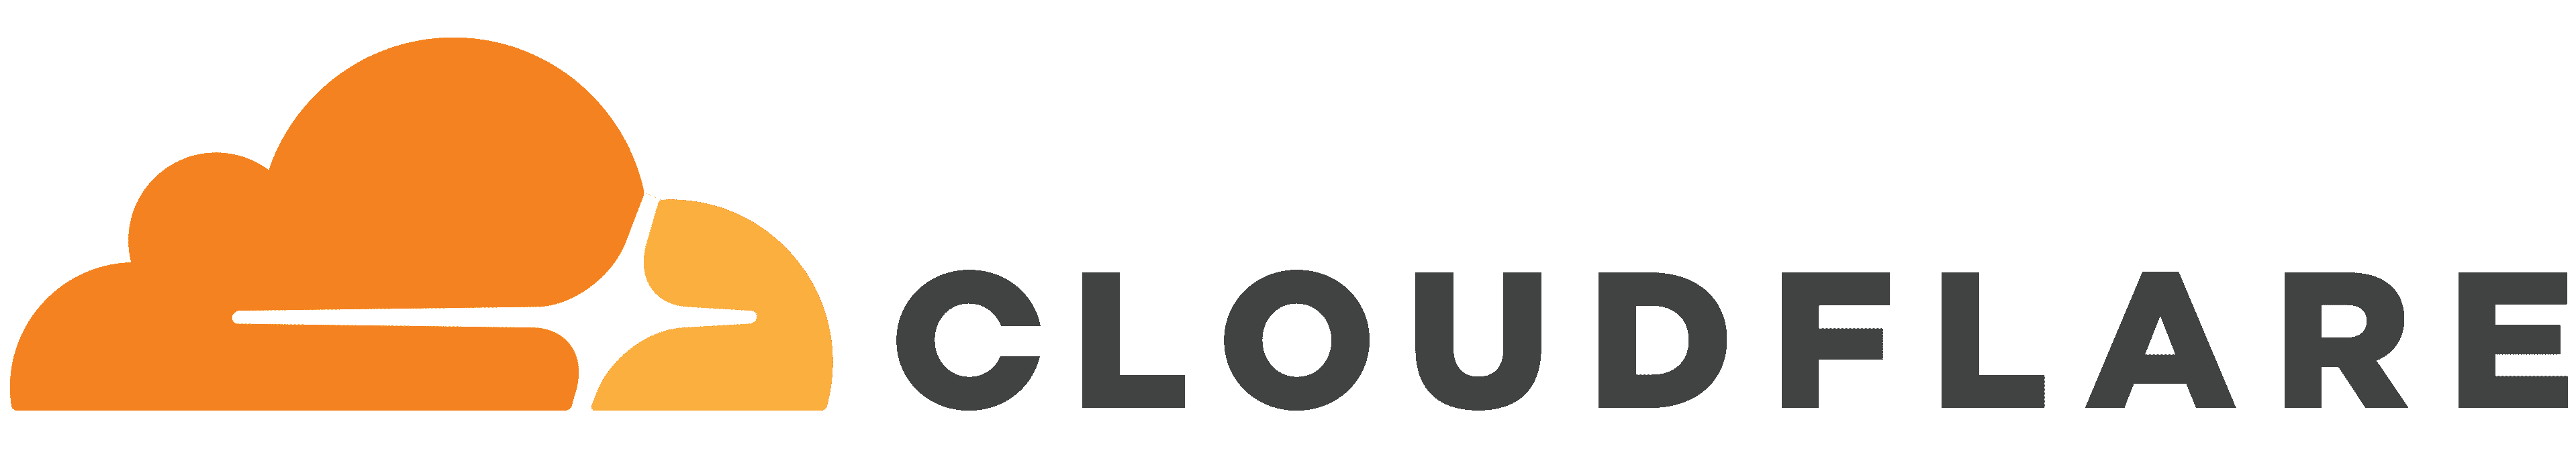 Cloudflare увеличи скоростта си на 100G logo